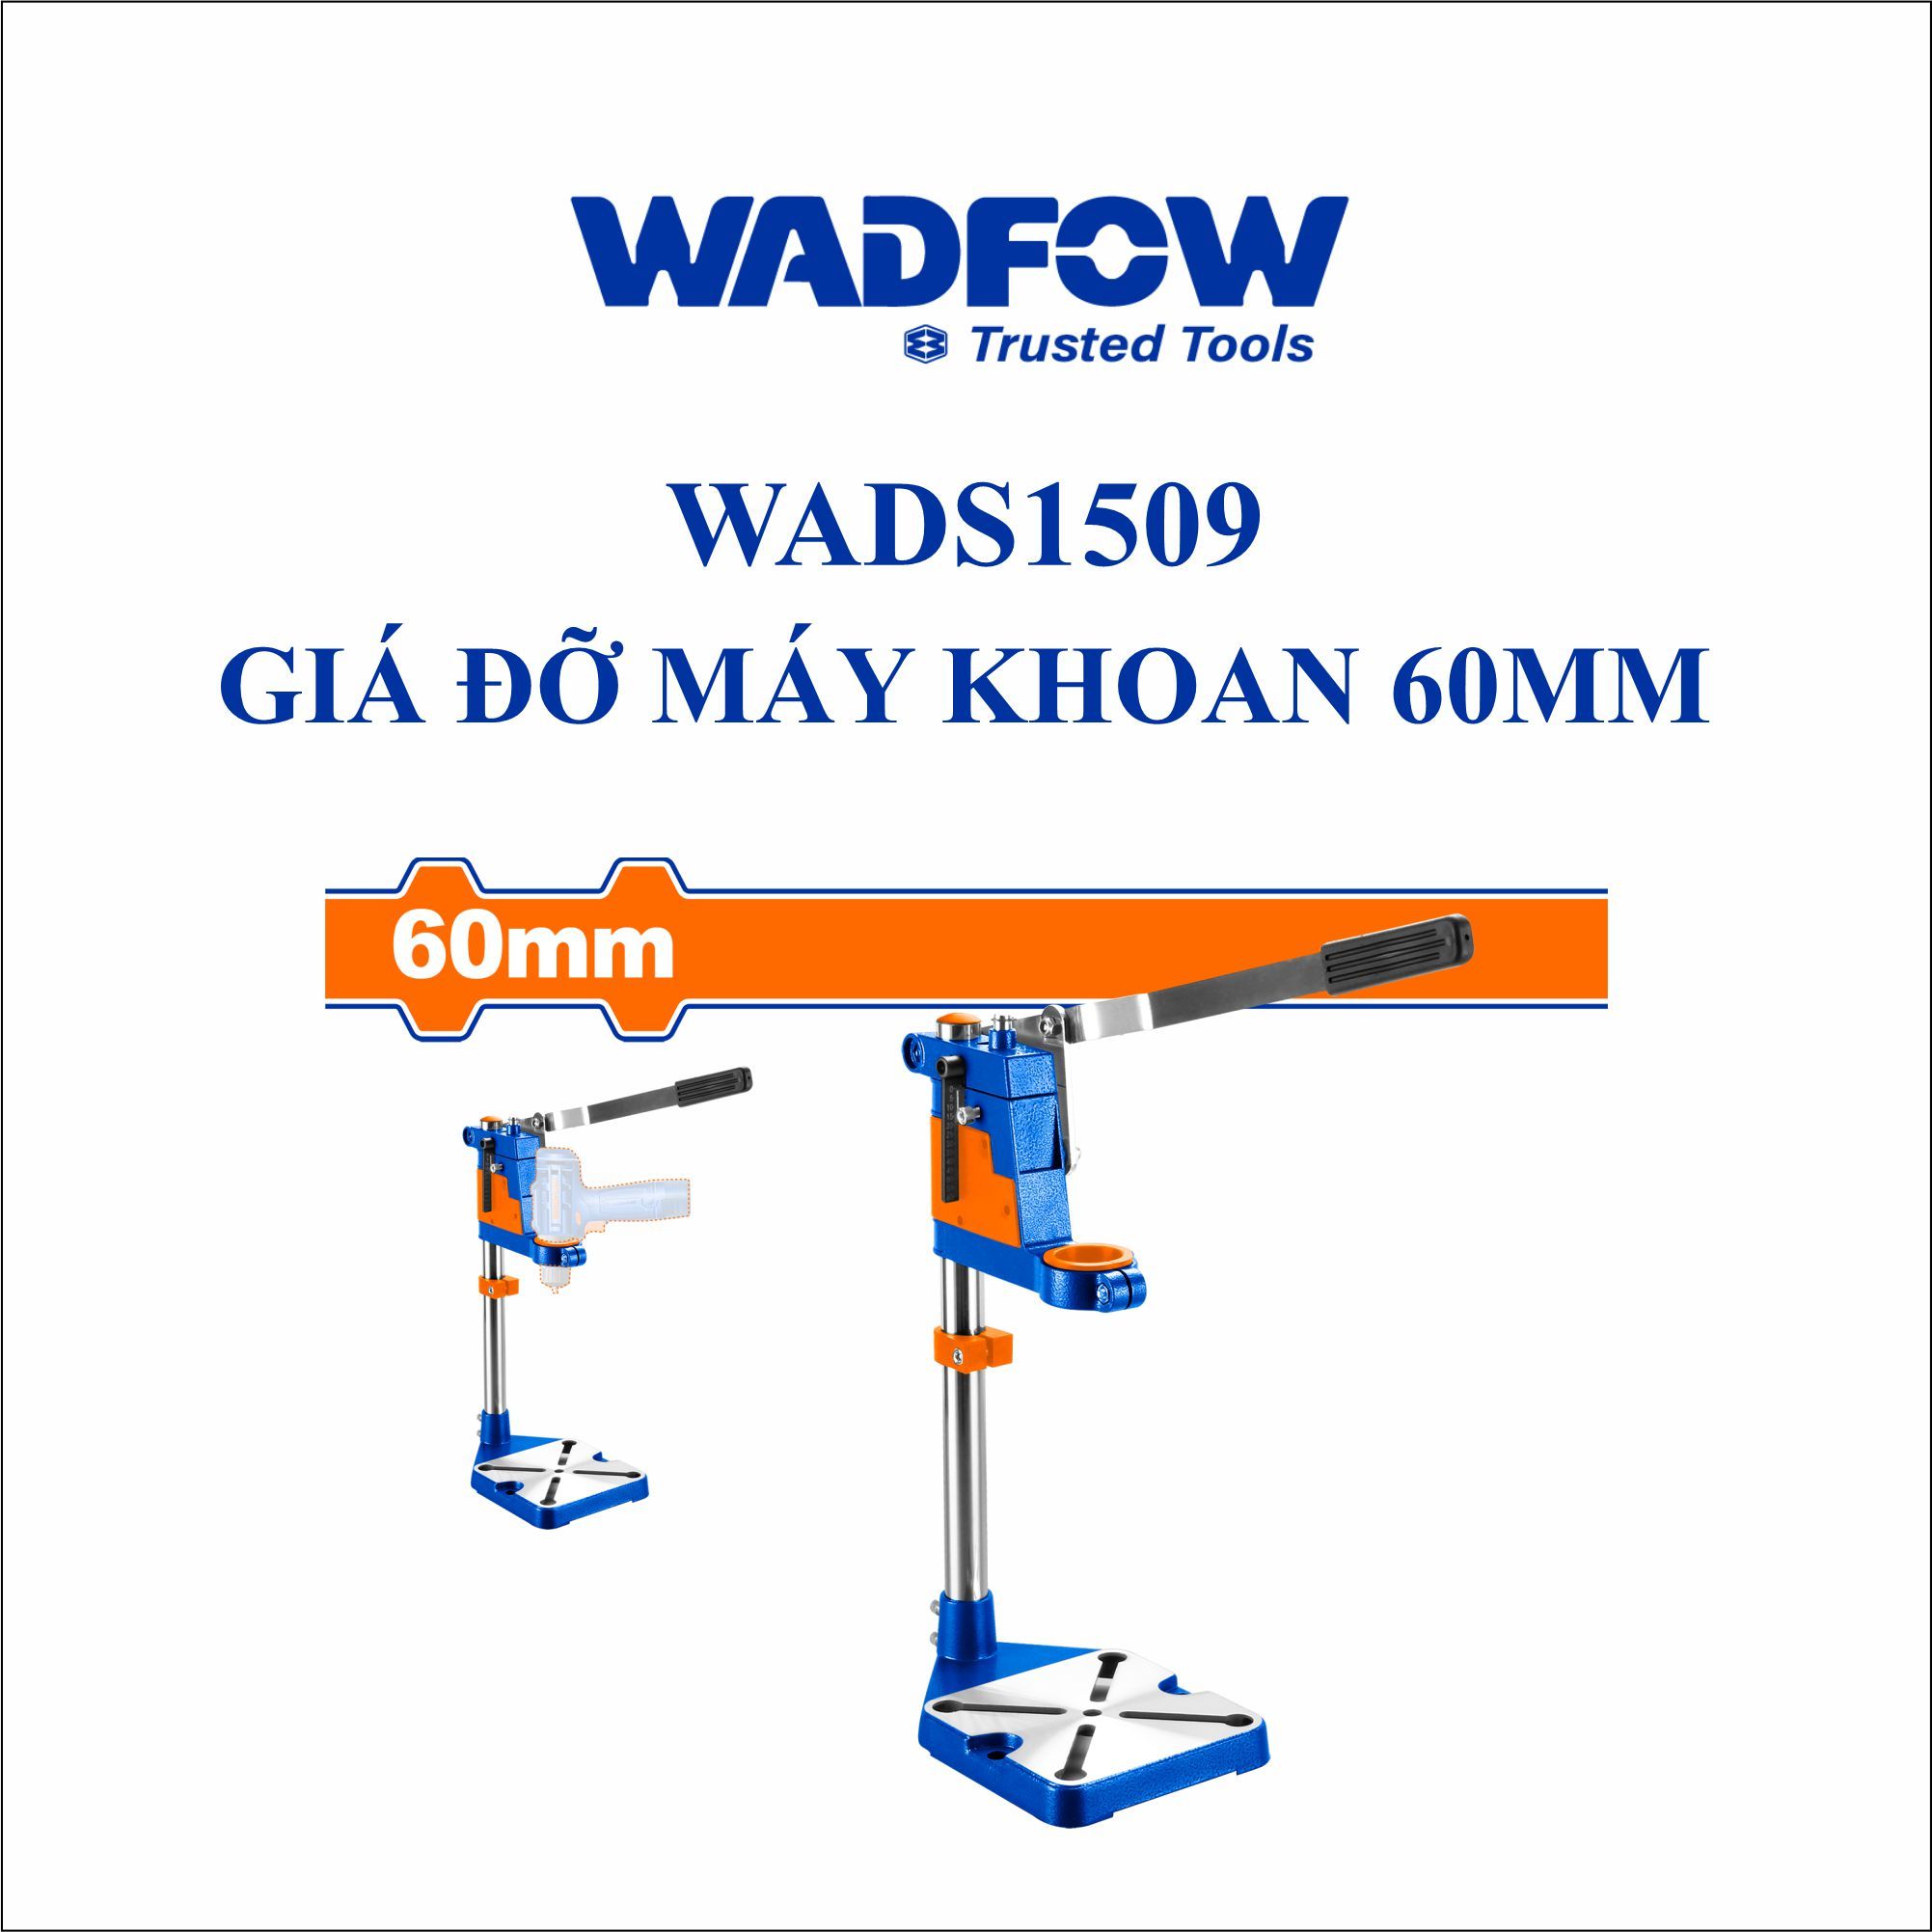  Giá đỡ máy khoan 60mm WADFOW WADS1509 